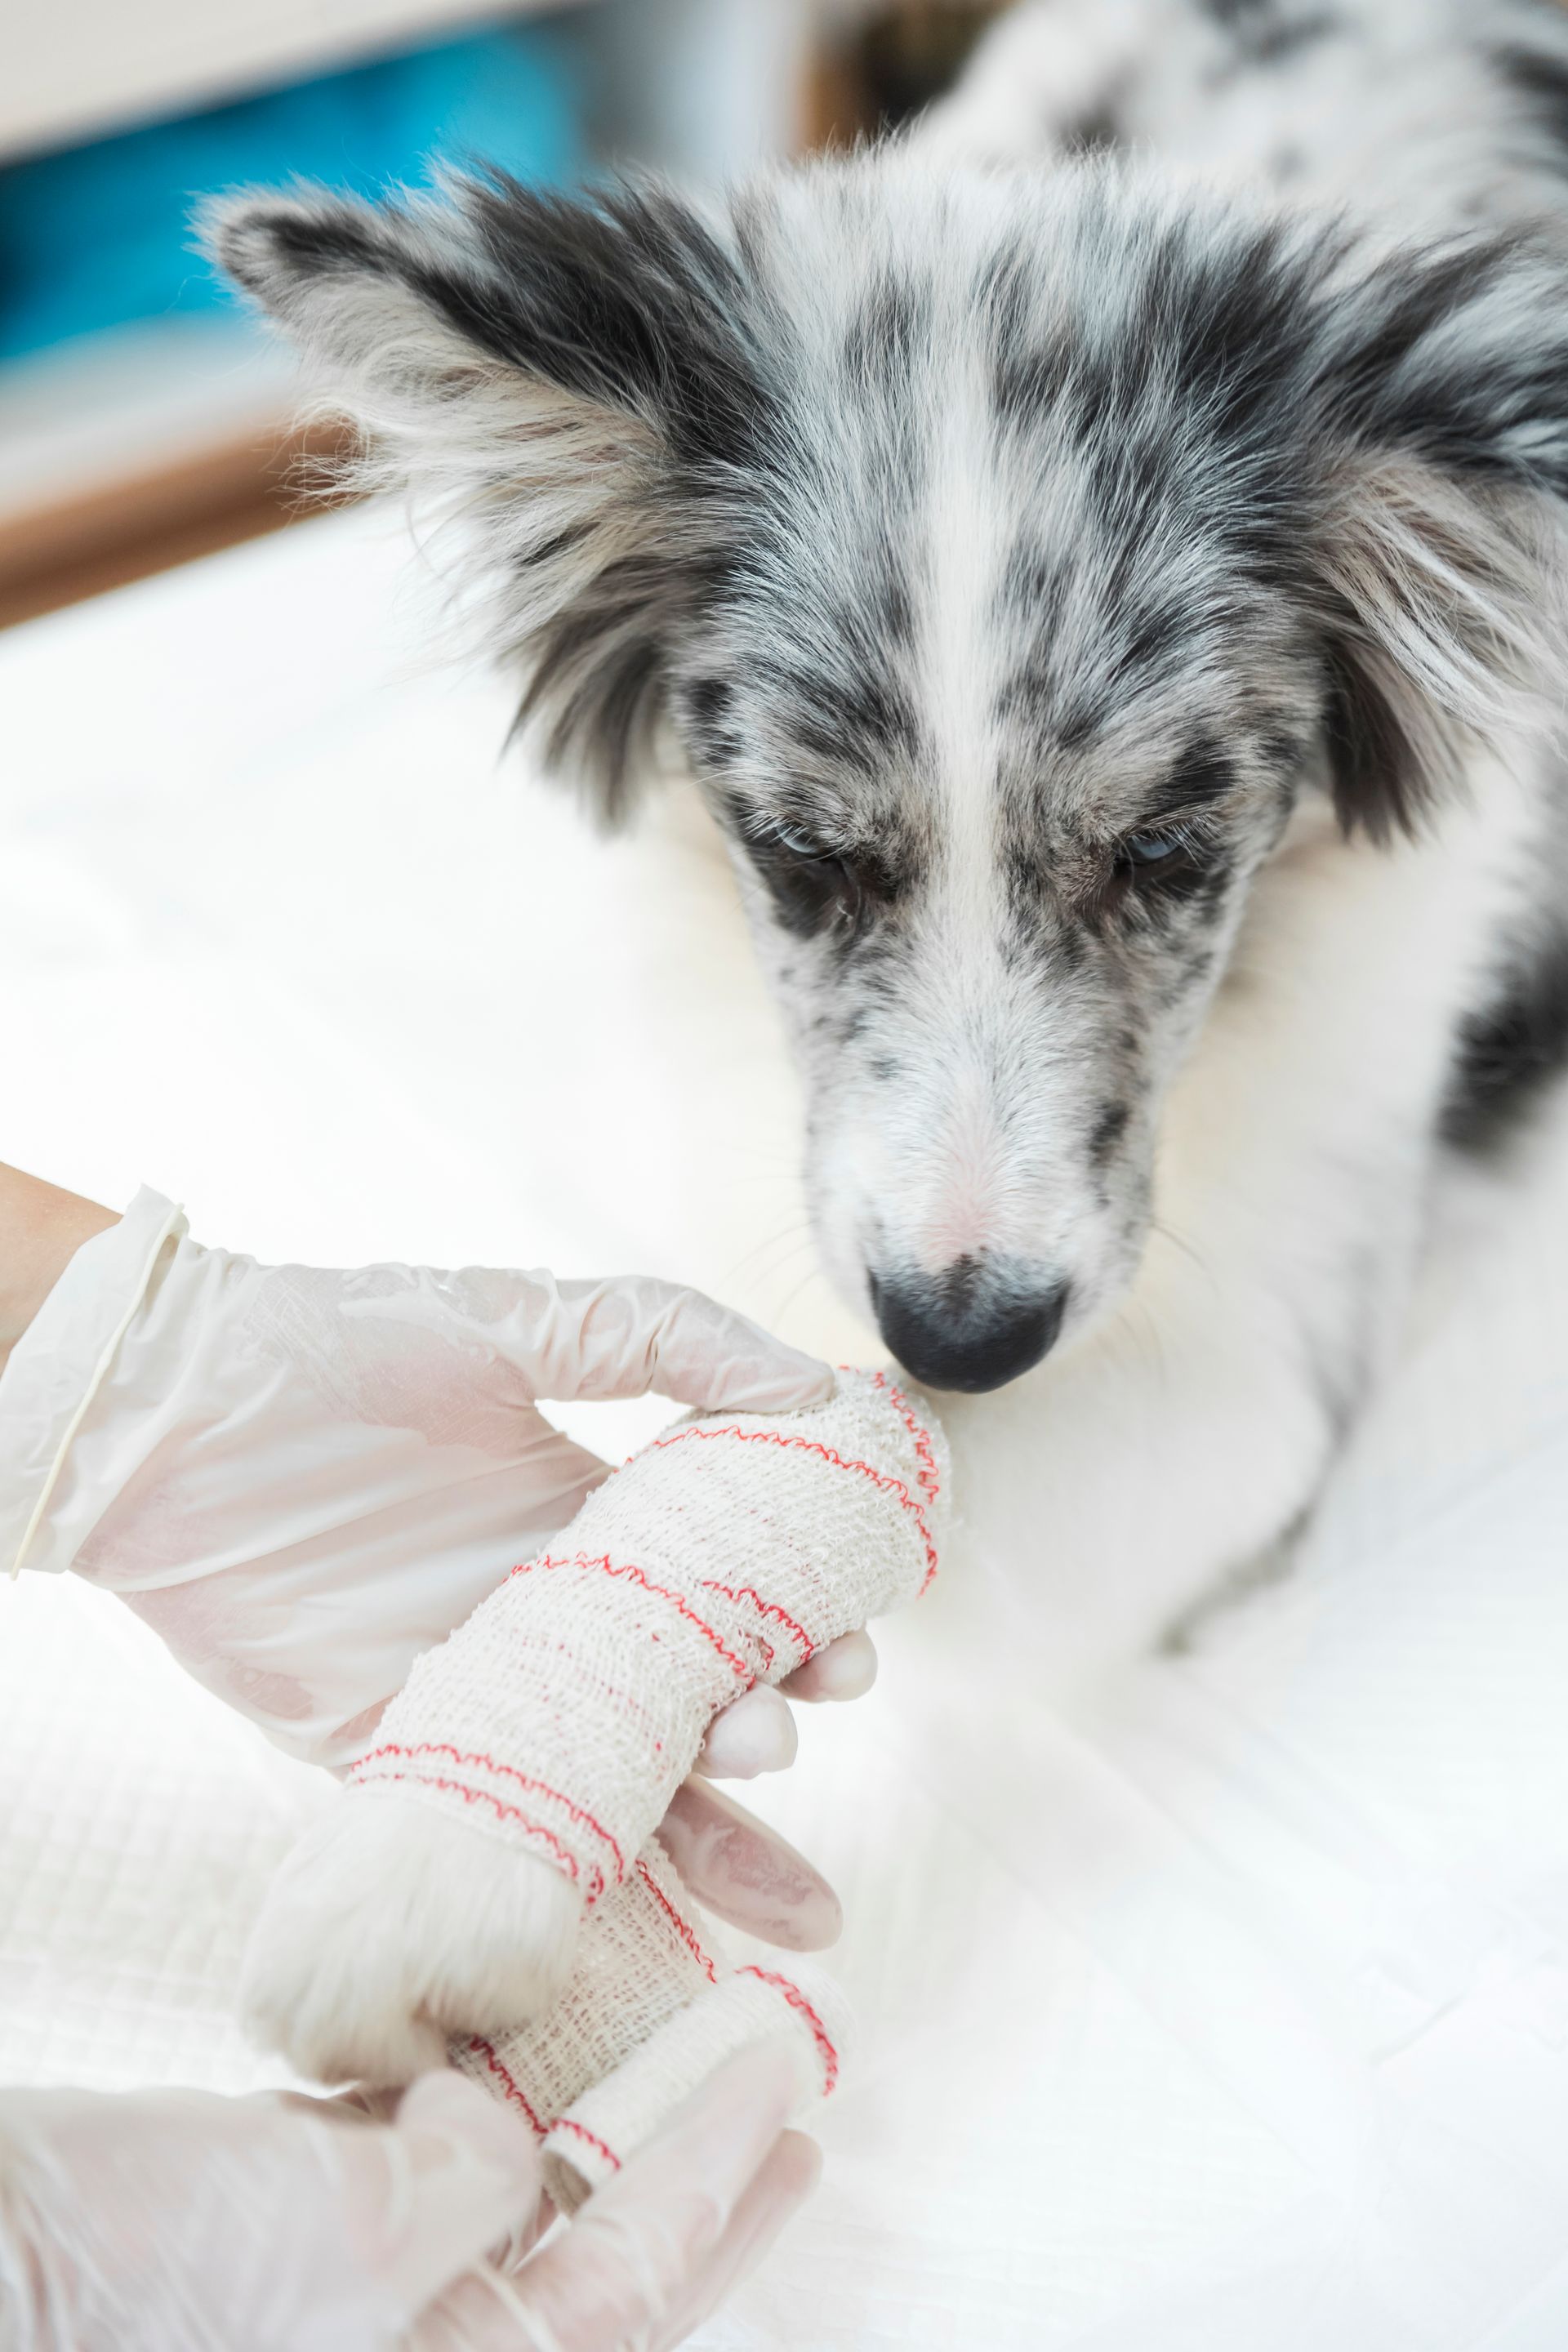 close up injured dog with white bandaged its paw limb